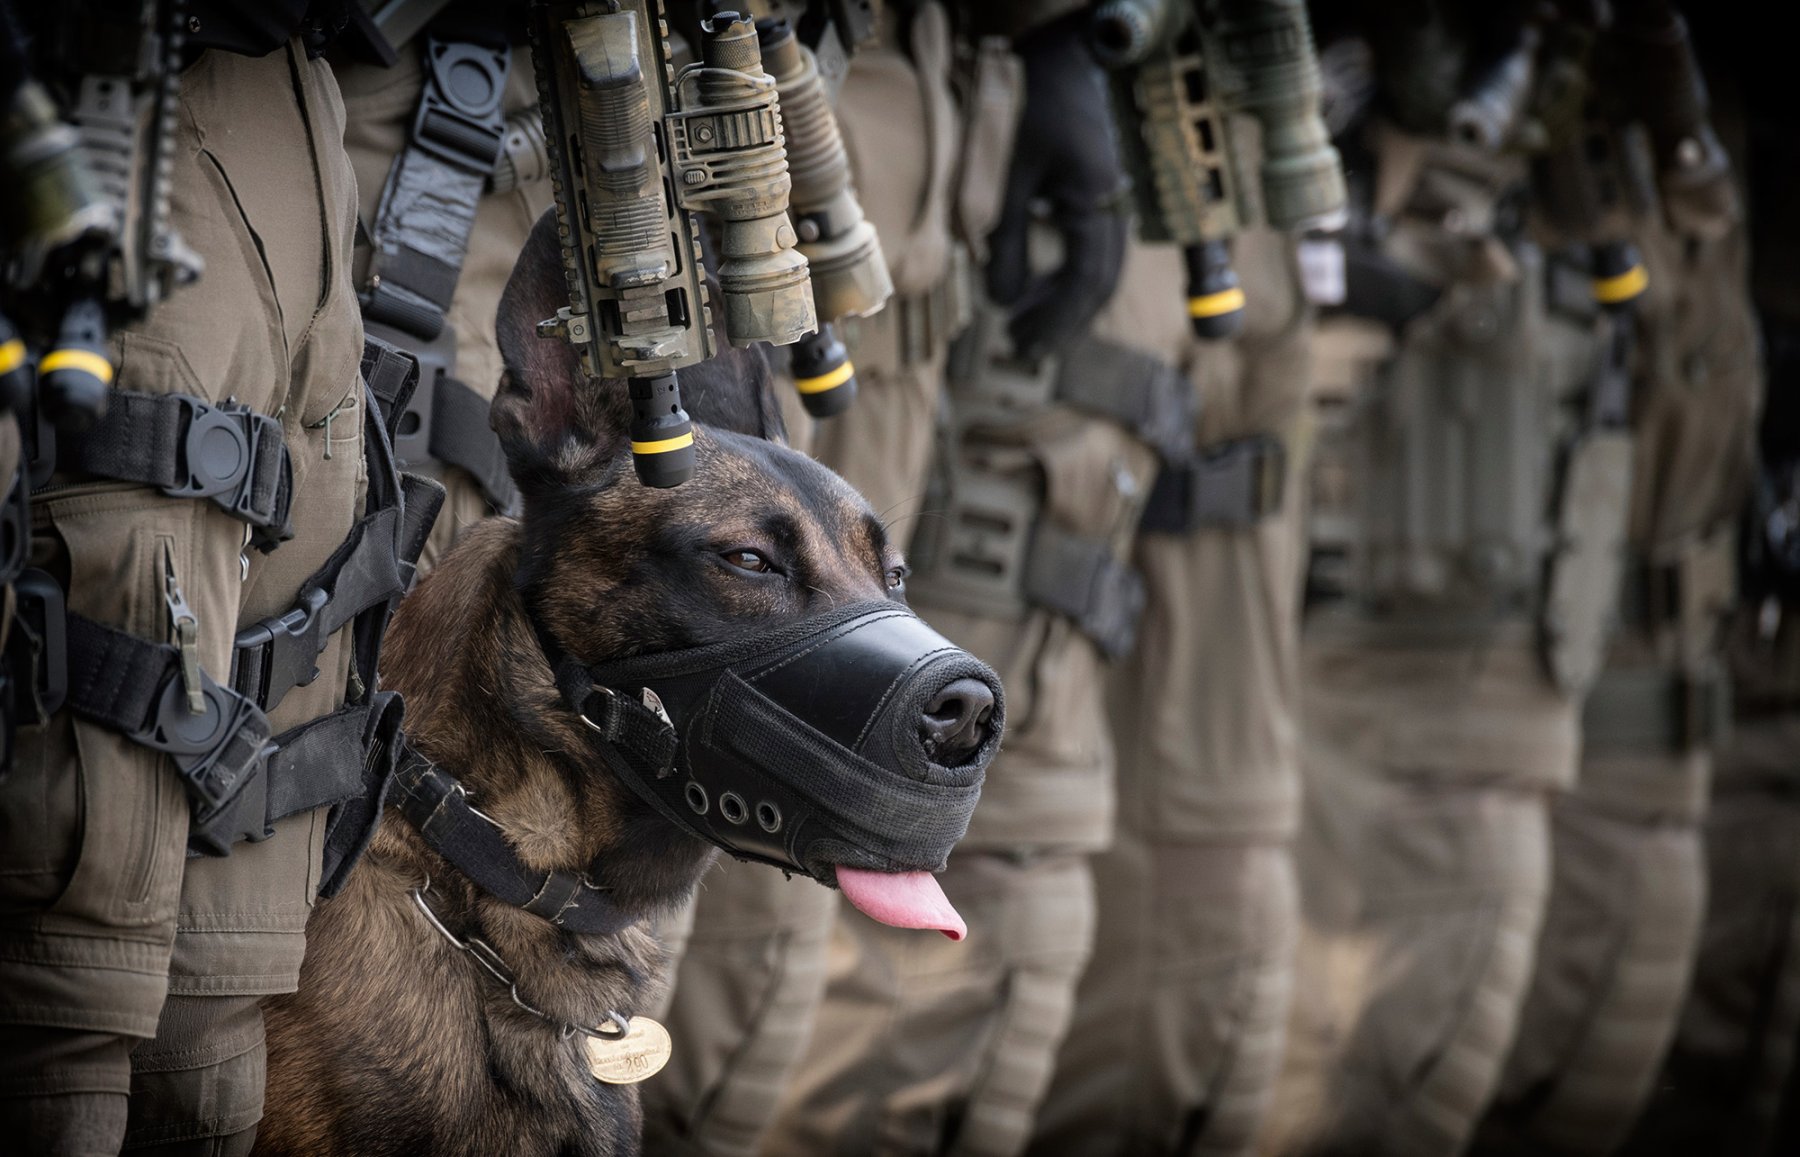 Während die Elitepolizisten des Spezialeinsatzkommandos (SEK) der Polizei Frankfurt nach einer Übung in Reih und Glied antreten, blickt auch Polizeihund "Whisky" weiter wachsam nach vorn. Hunde gelten als wichtiges polizeiliches "Einsatzmittel".